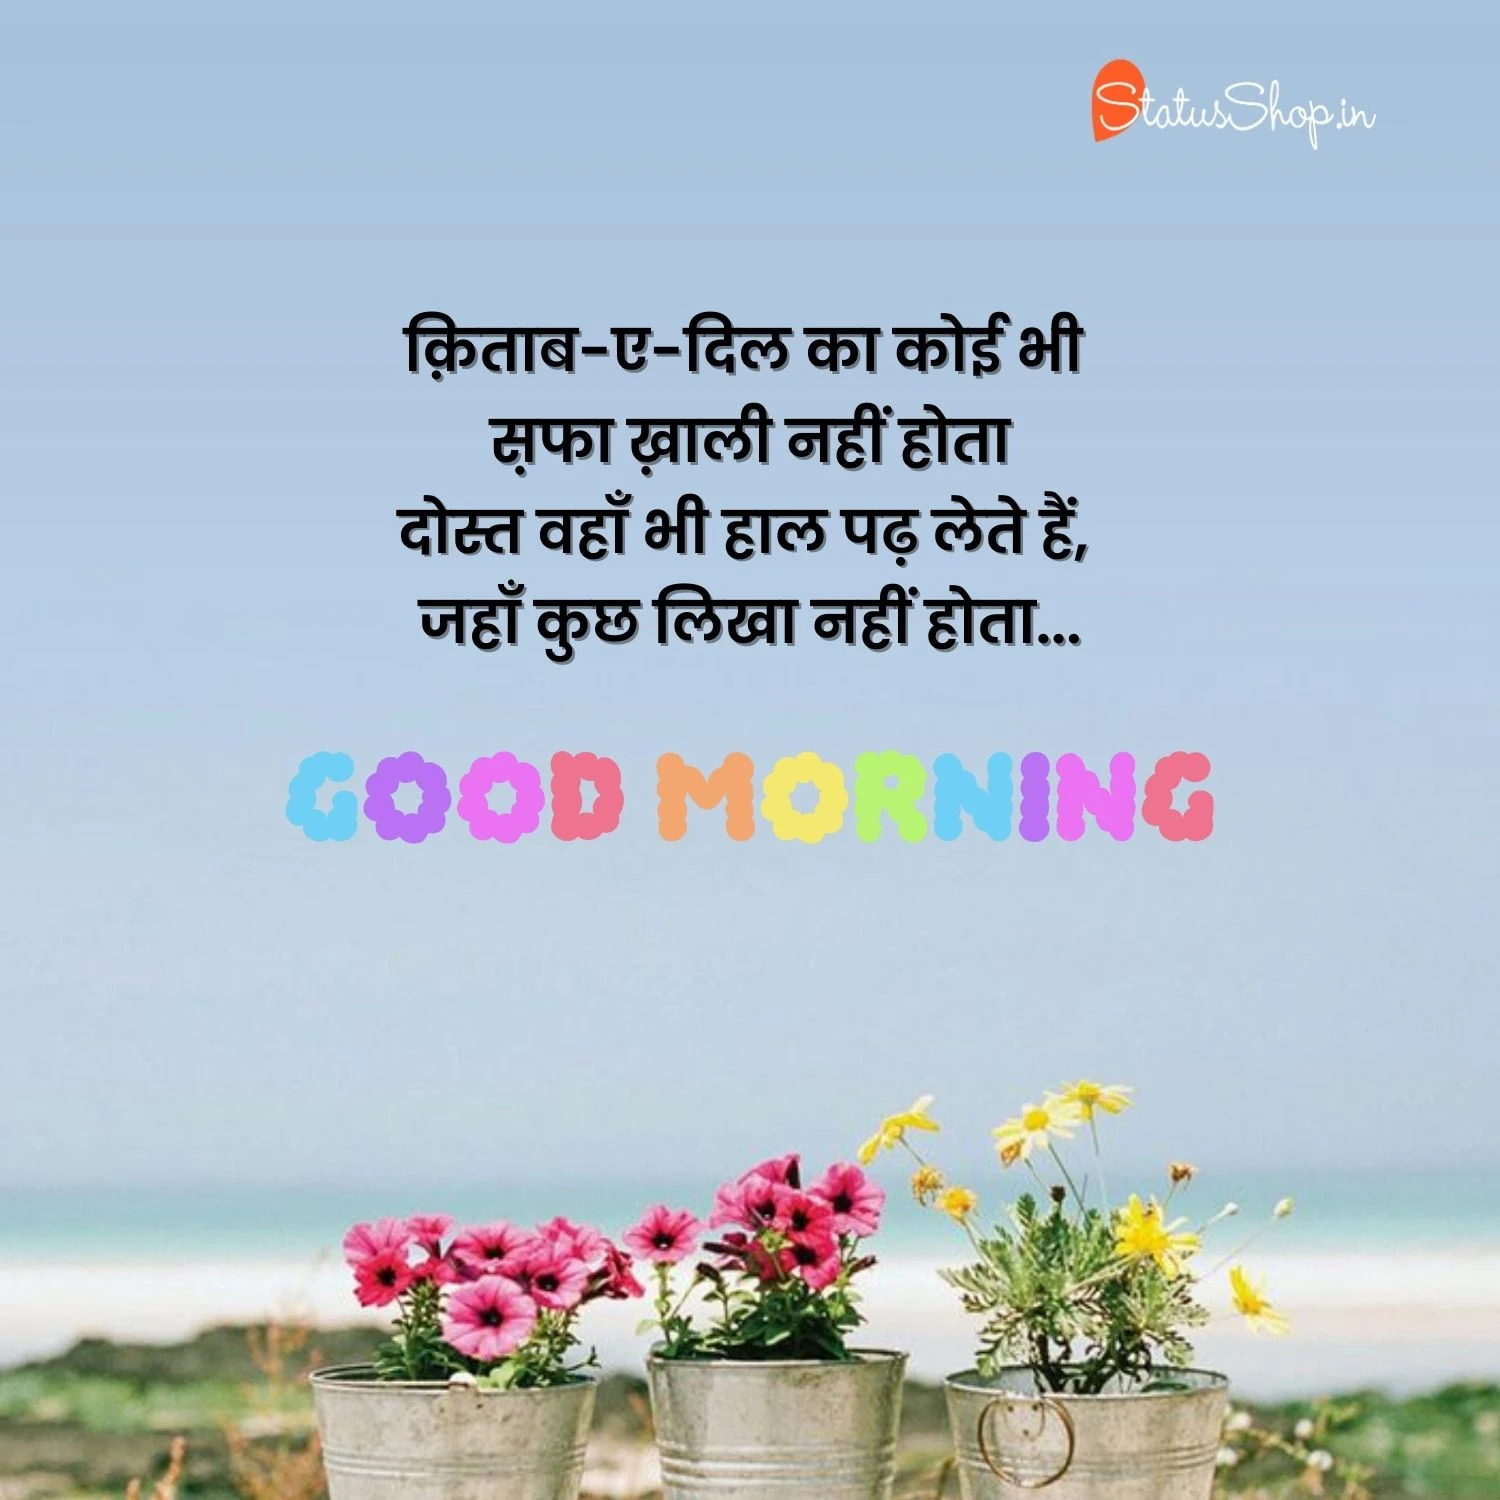 Good-Morning-Images-Hindi